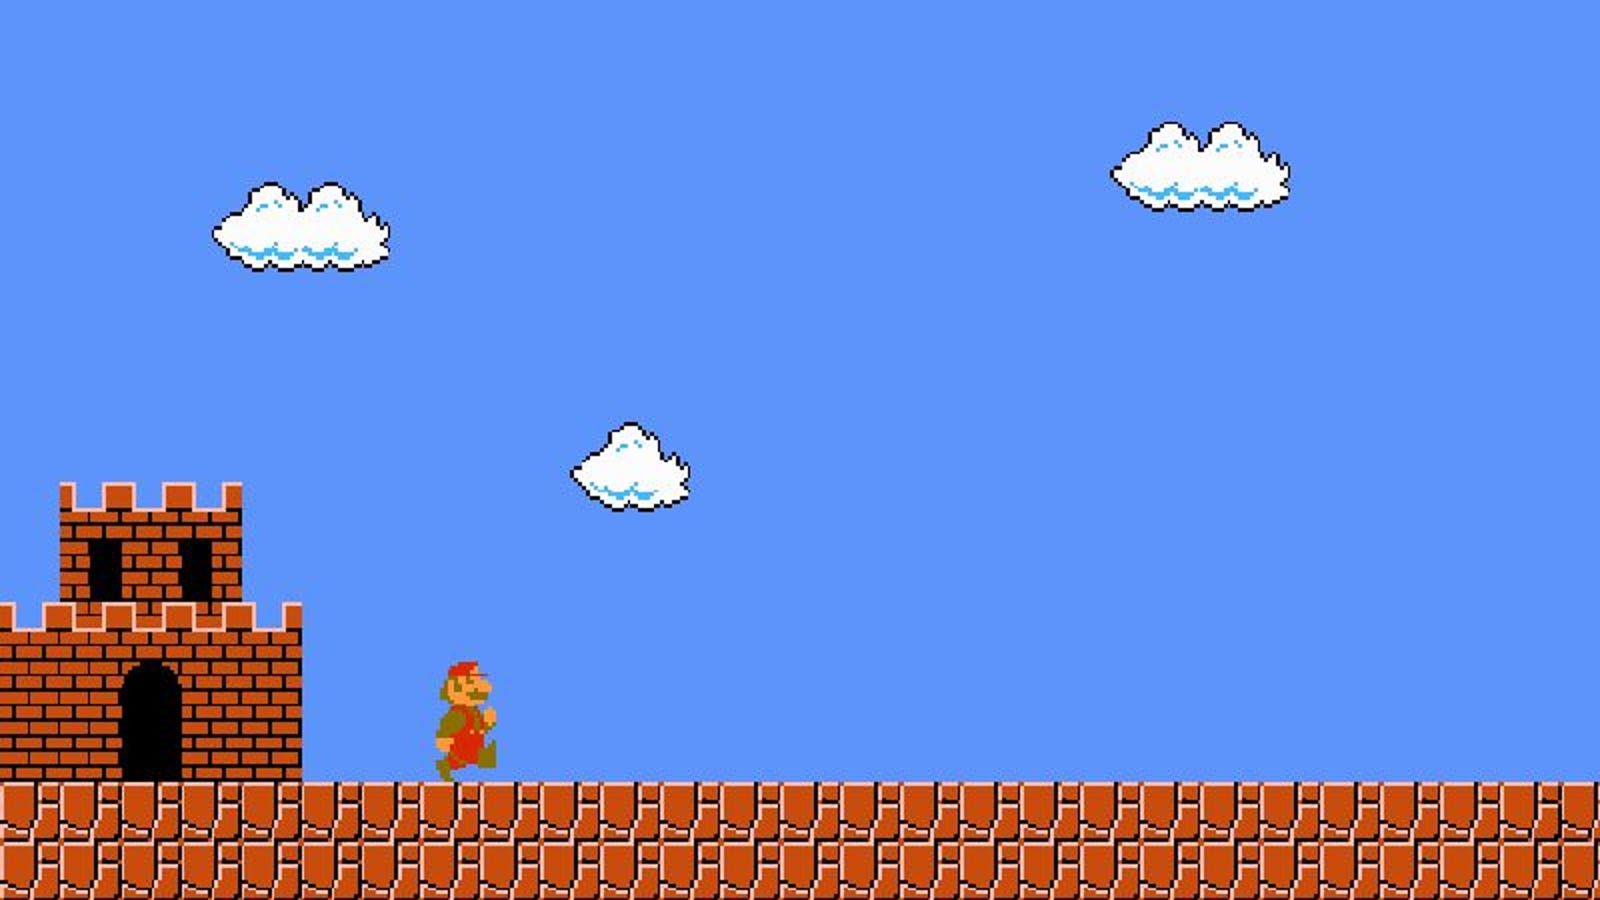 The Original Super Mario Bros Remains Marios Loneliest Quest